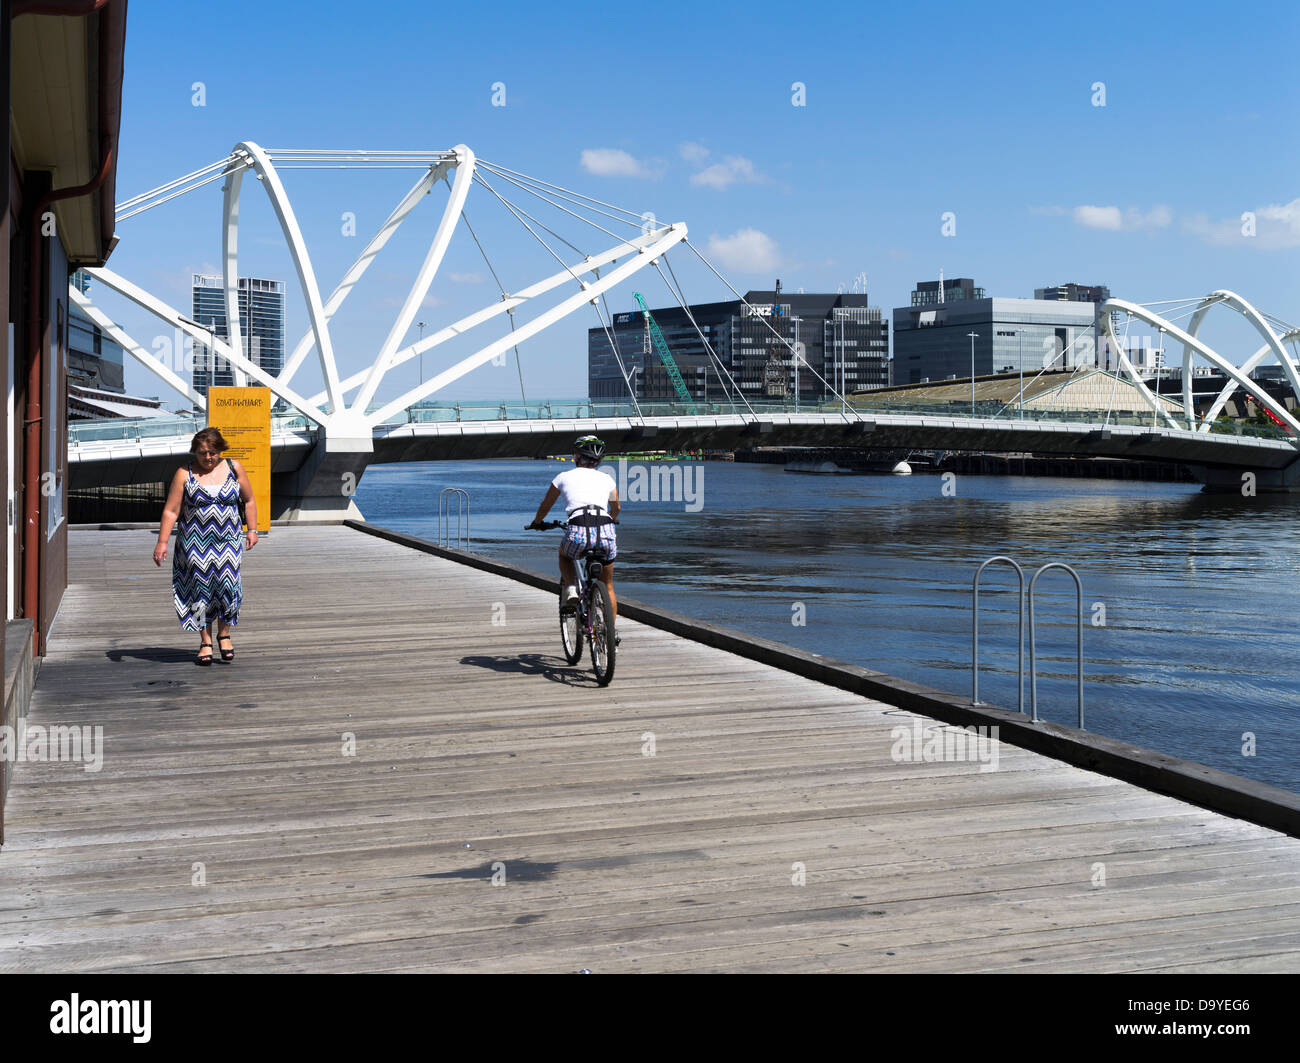 dh Yarra River promenade MELBOURNE AUSTRALIE Boatbuilders yard cycliste Seafgens Bridge vélo à vélo à vélo Banque D'Images